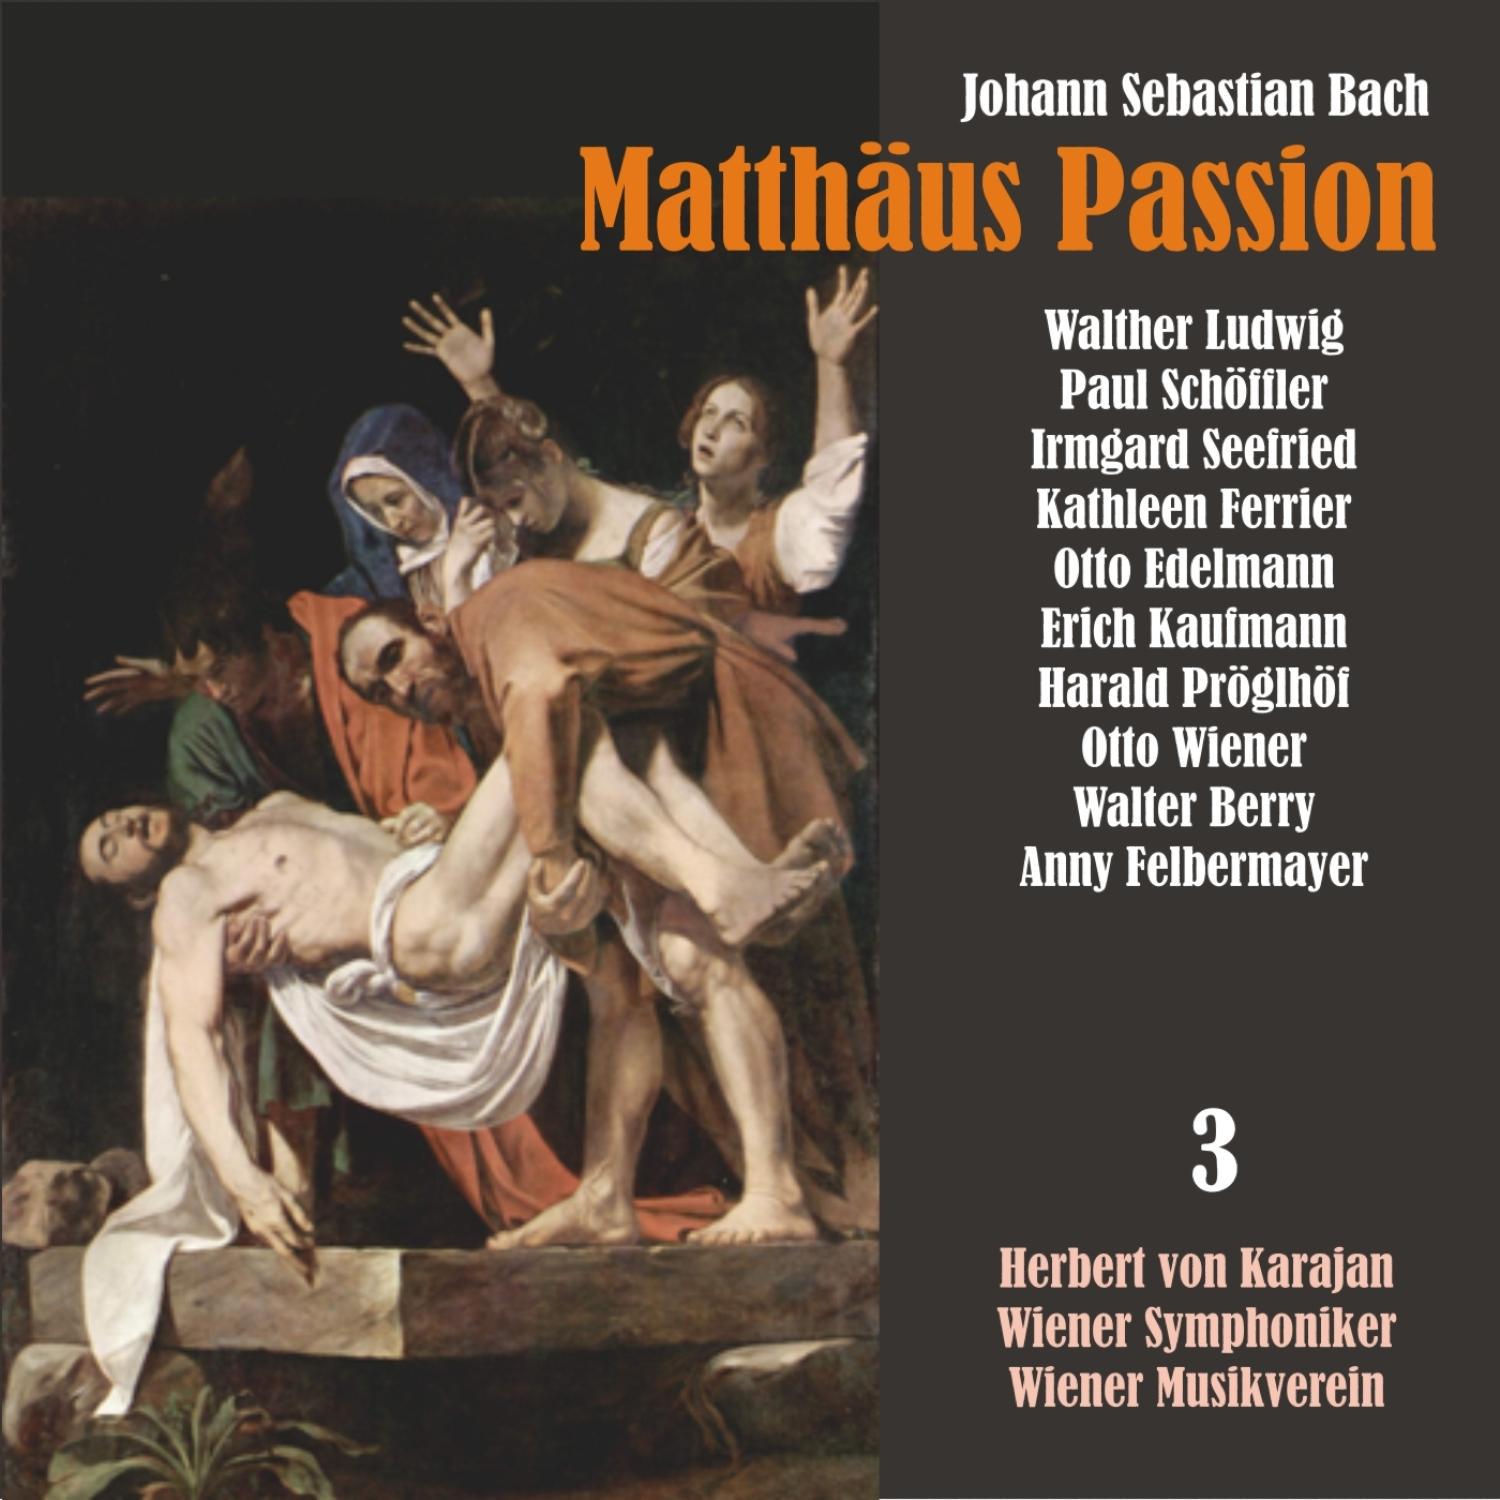 Matthäus Passion, BWV 244: "Er hat uns allen wohlgetan"